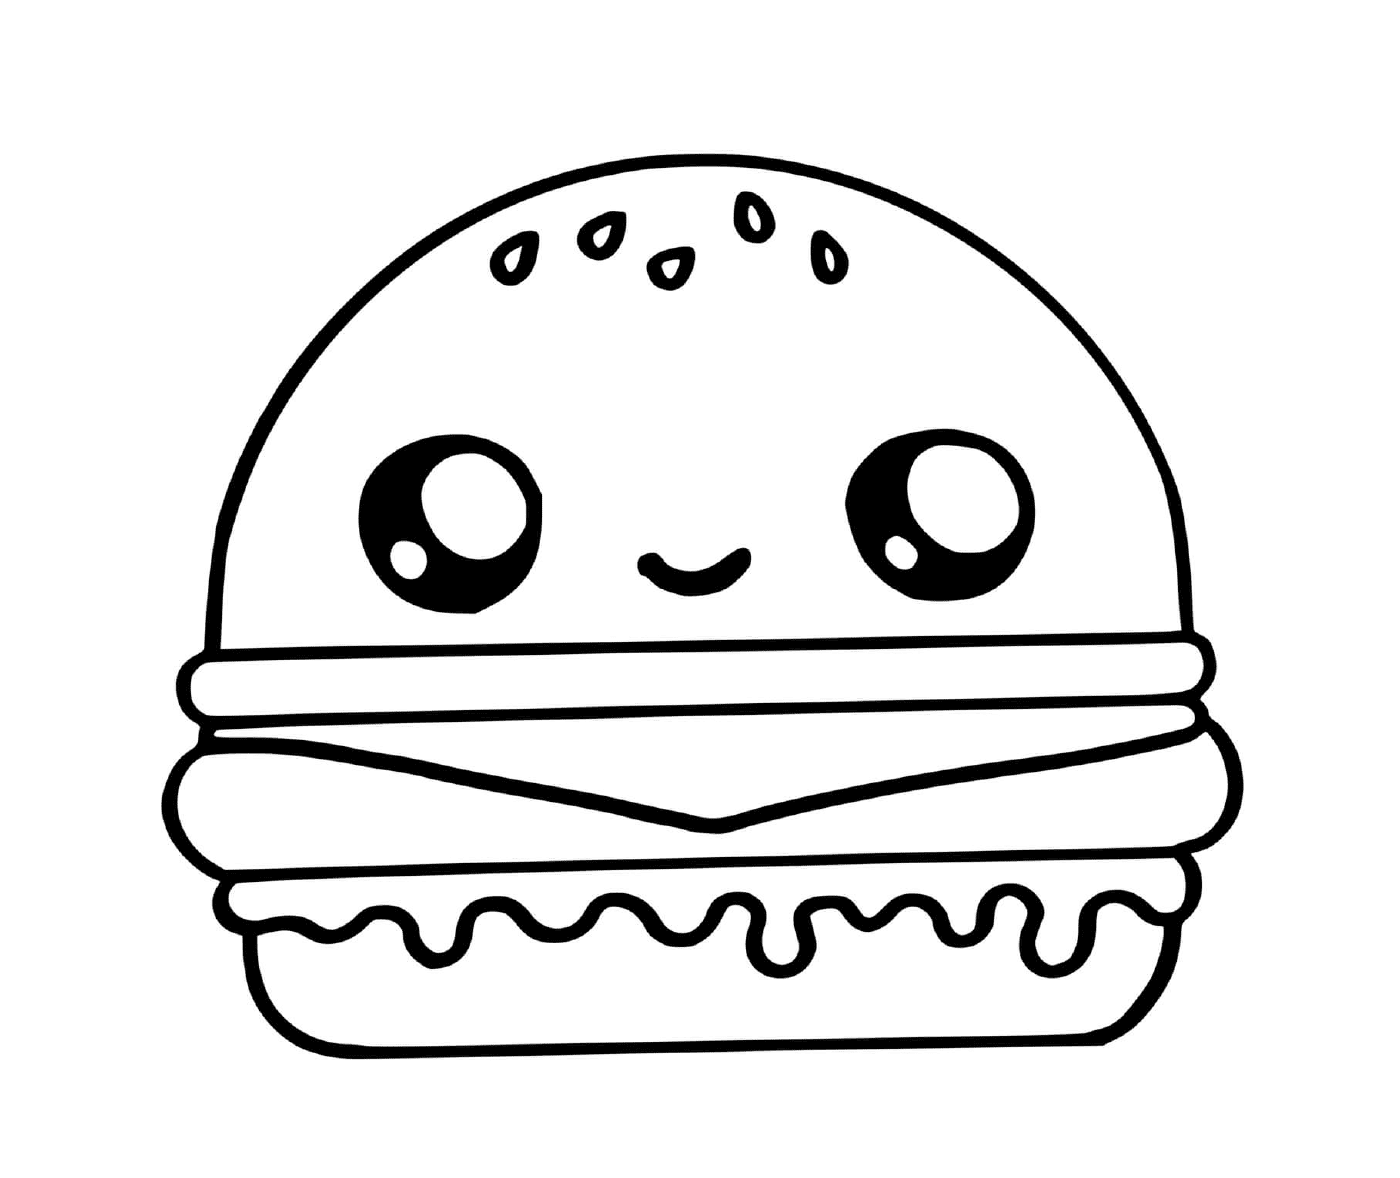  Una hamburguesa 